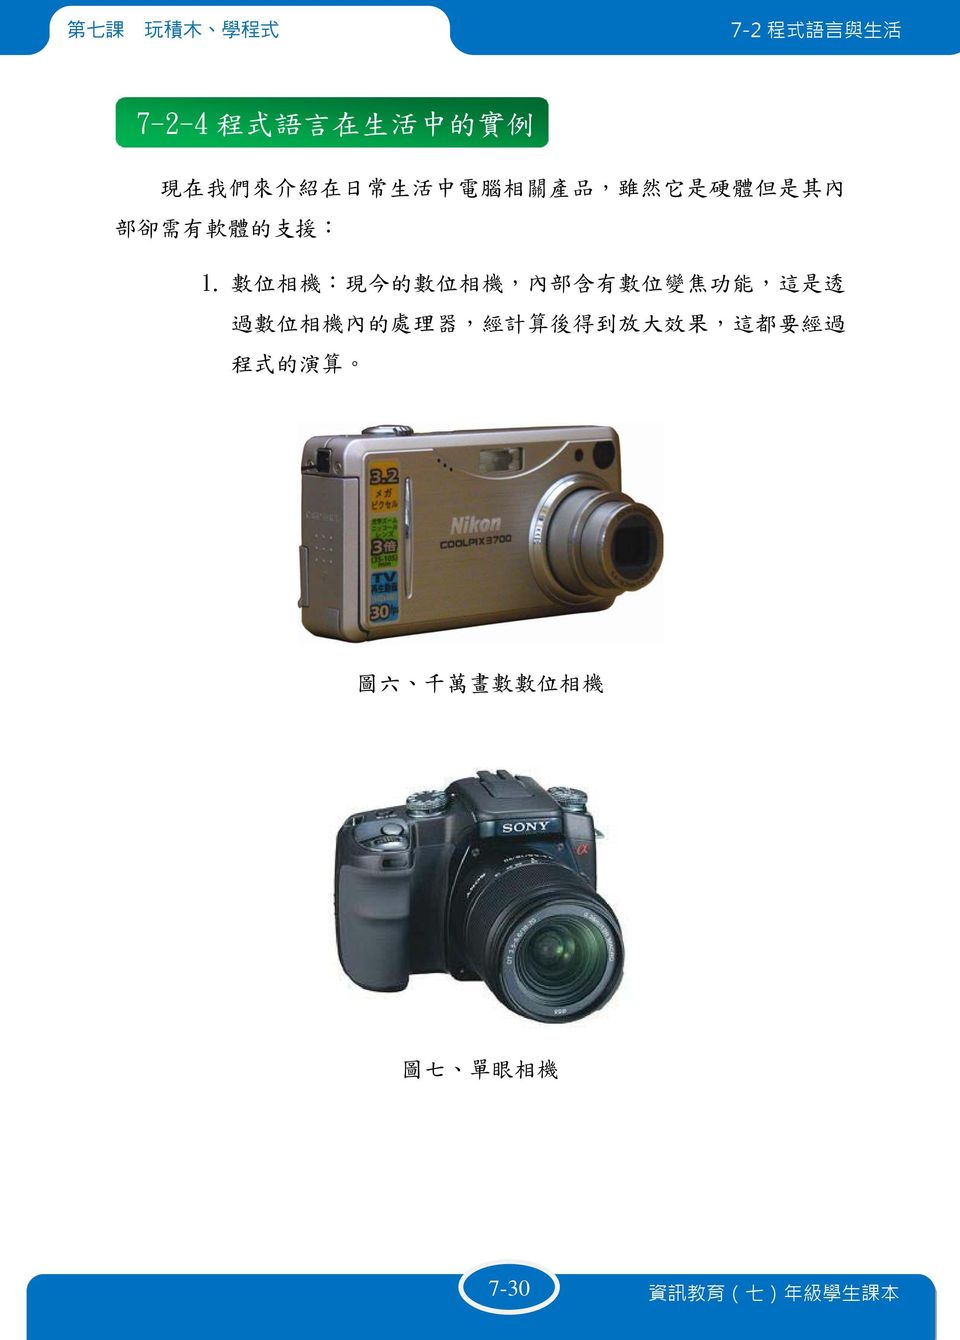 數 位 相 機 : 現 今 的 數 位 相 機, 內 部 含 有 數 位 變 焦 功 能, 這 是 透 過 數 位 相 機 內